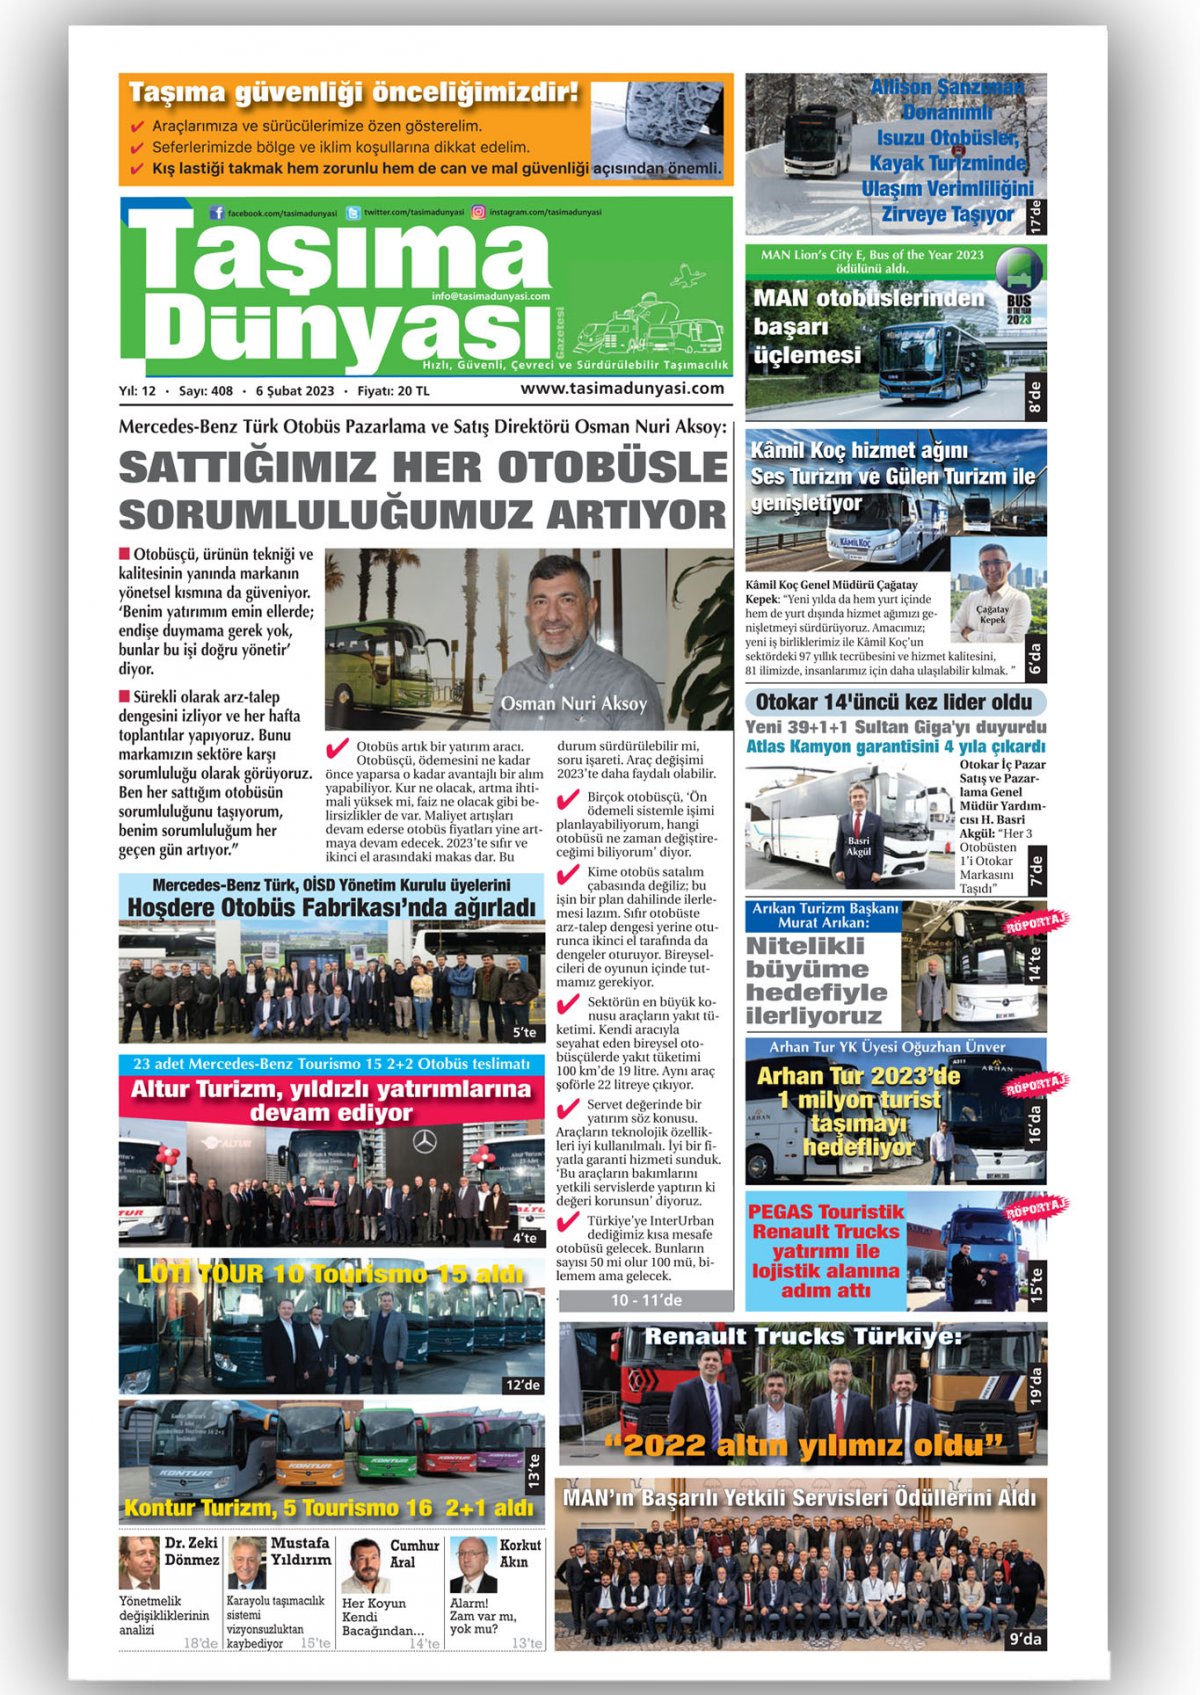 Taşıma Dünyası Gazetesi - 06.02.2023 Manşeti